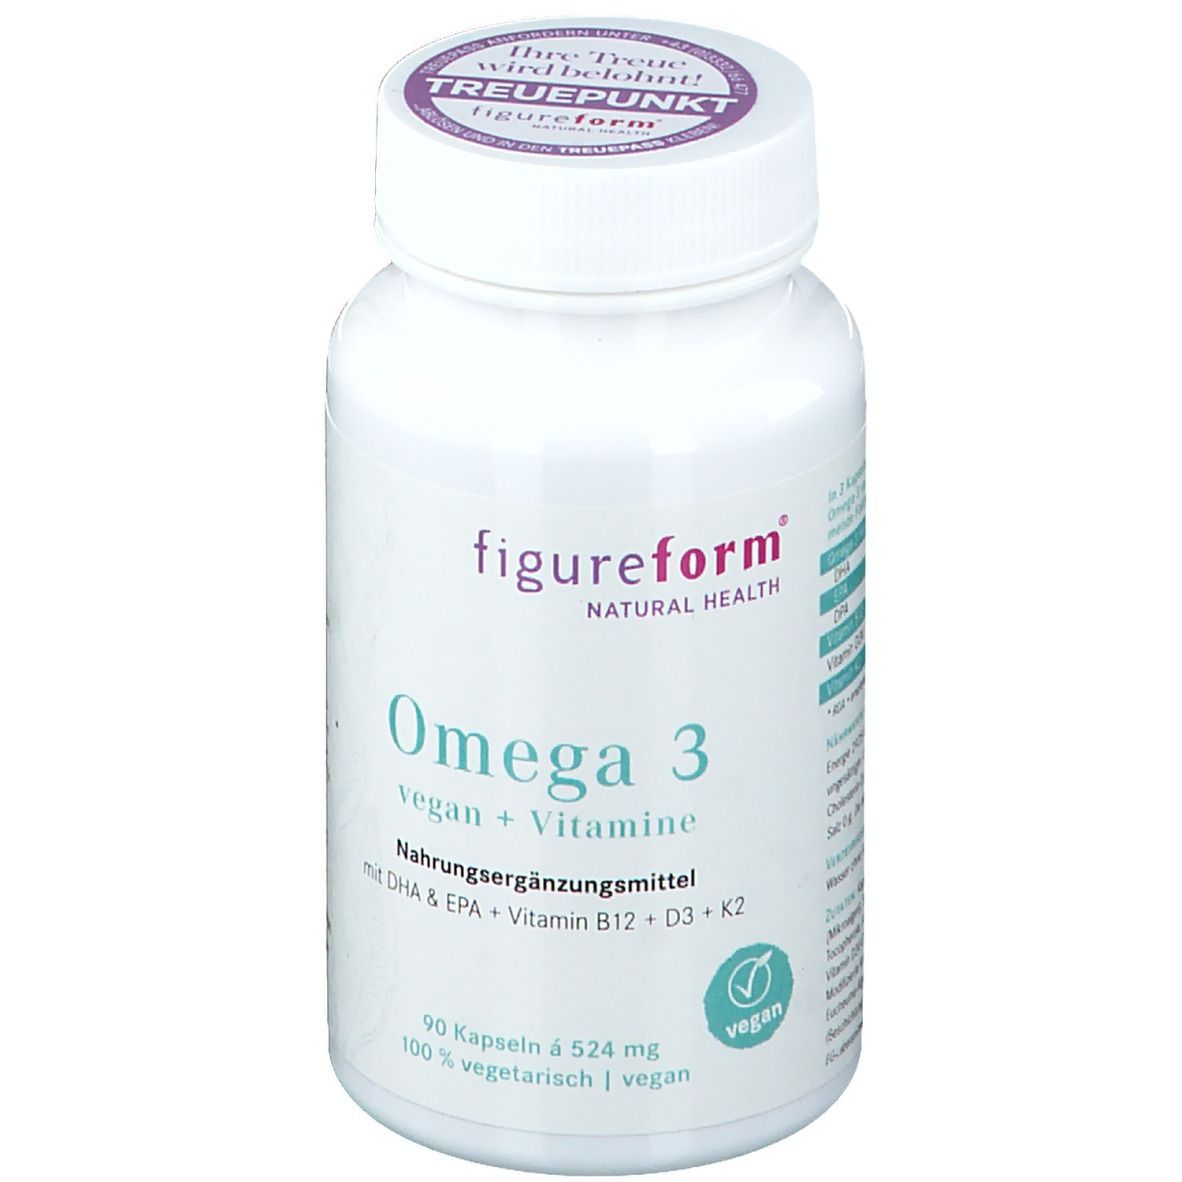 Omega 3 vegan + Vitamine